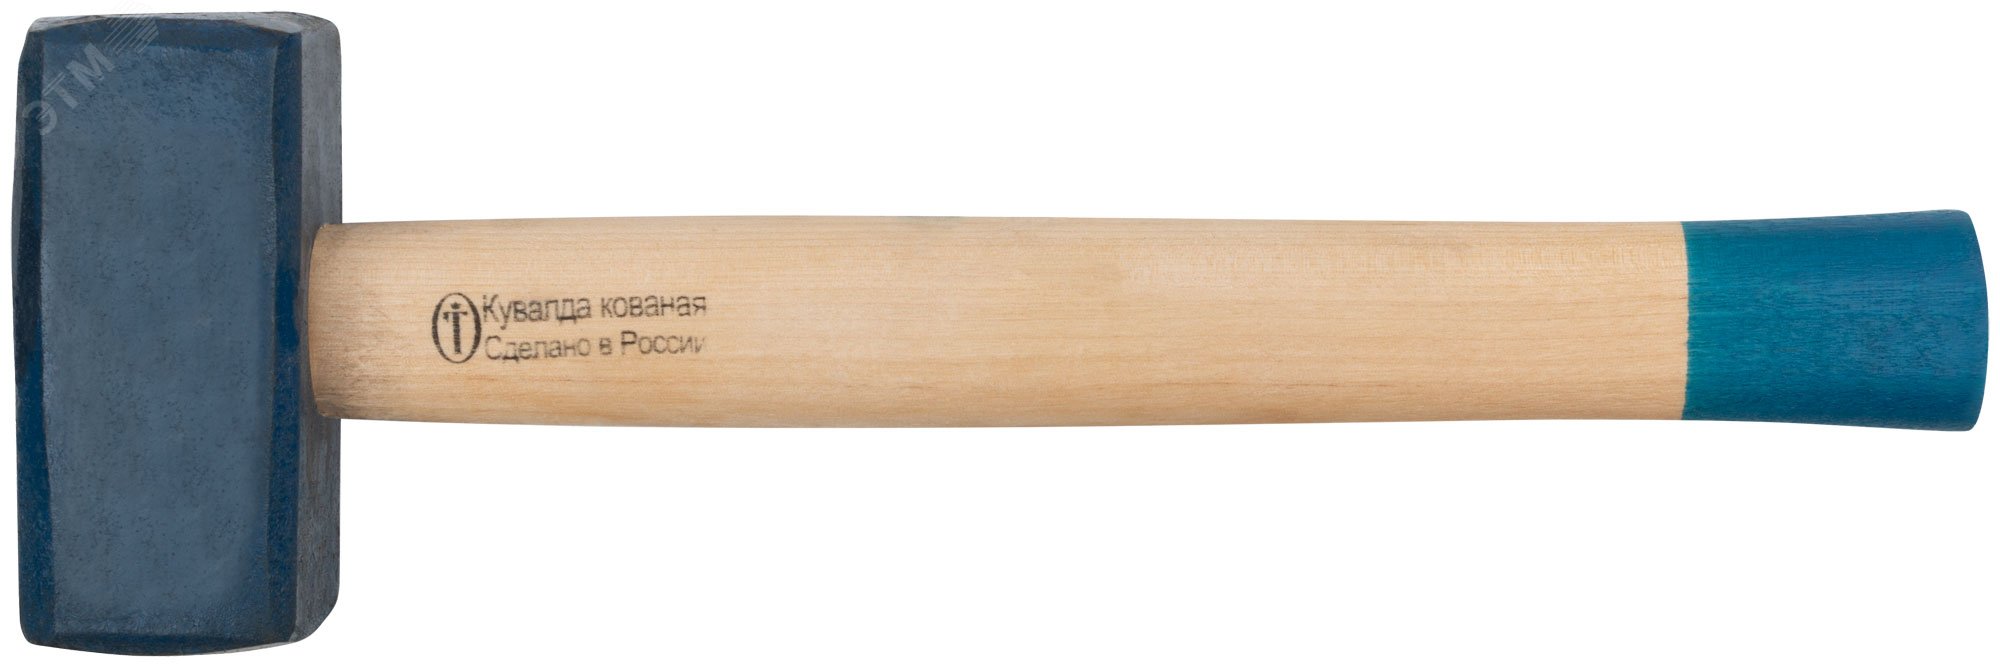 Кувалда кованая в сборе, деревянная эргономичная ручка 3.25 кг 45033 РОС - превью